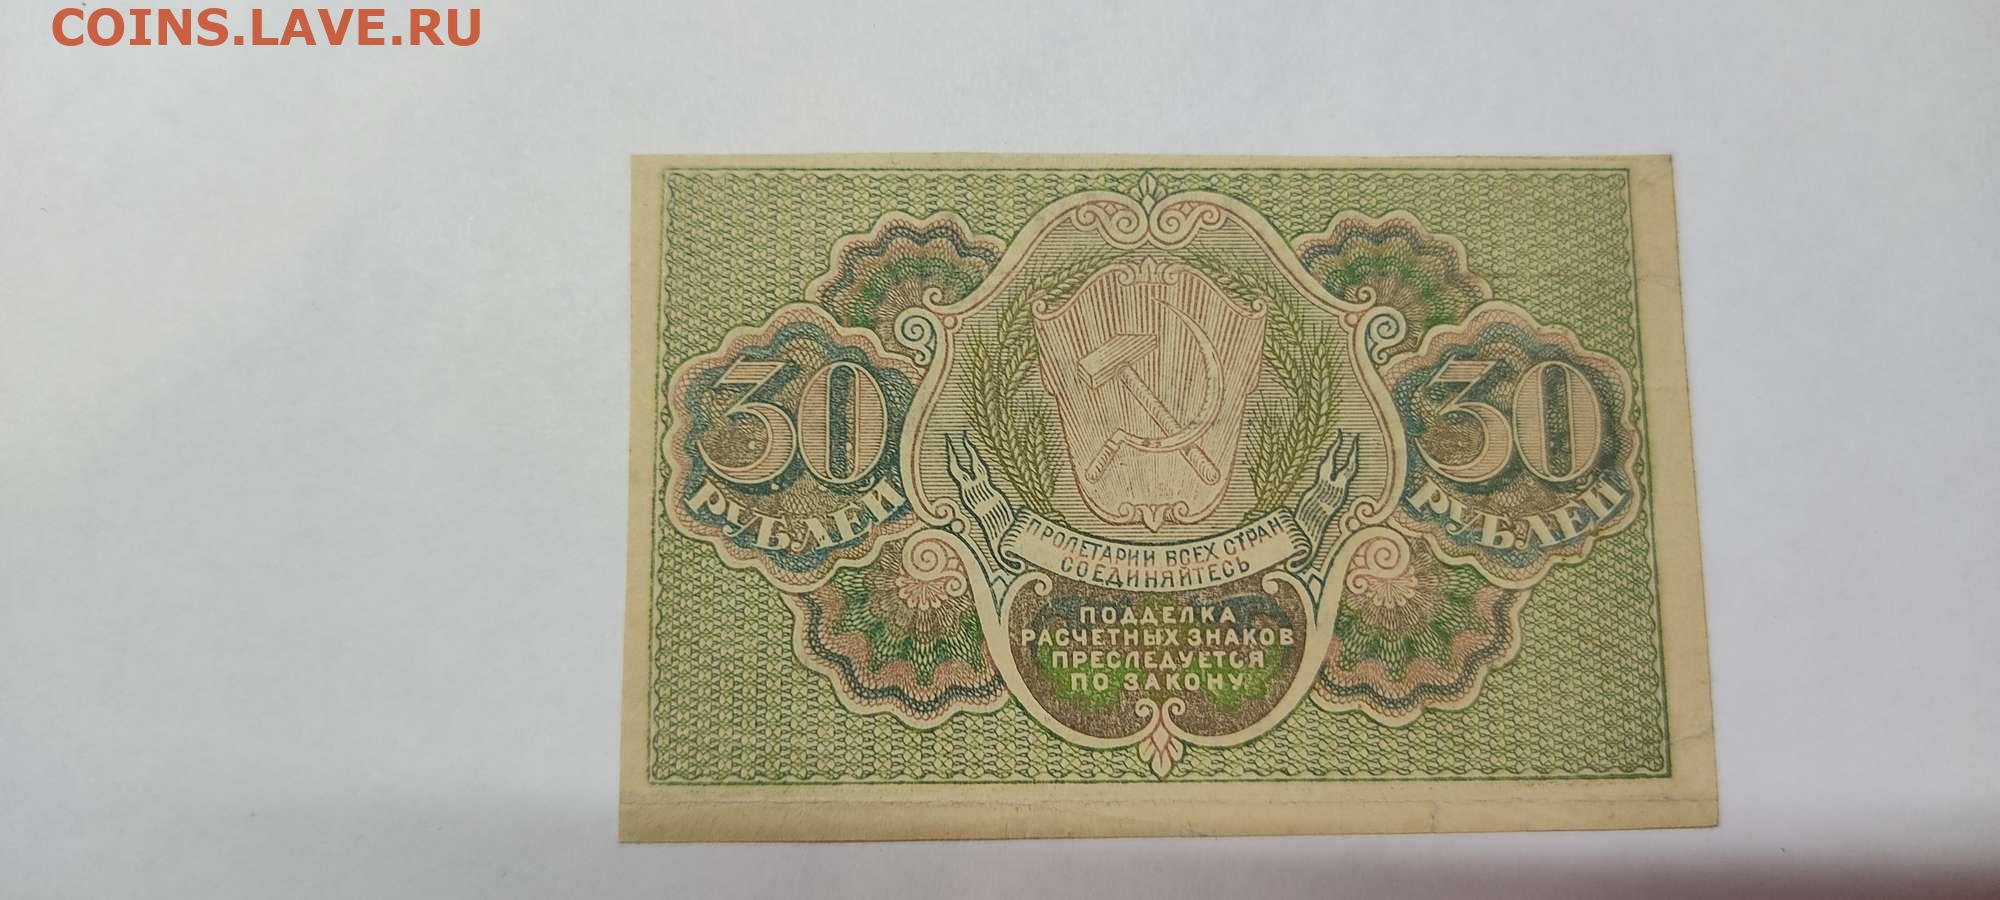 5 от 30 рублей. Расчетный знак 30 рублей. Расчетный знак монеты. 60 Рублей 1919 лист. 30 Рублей.